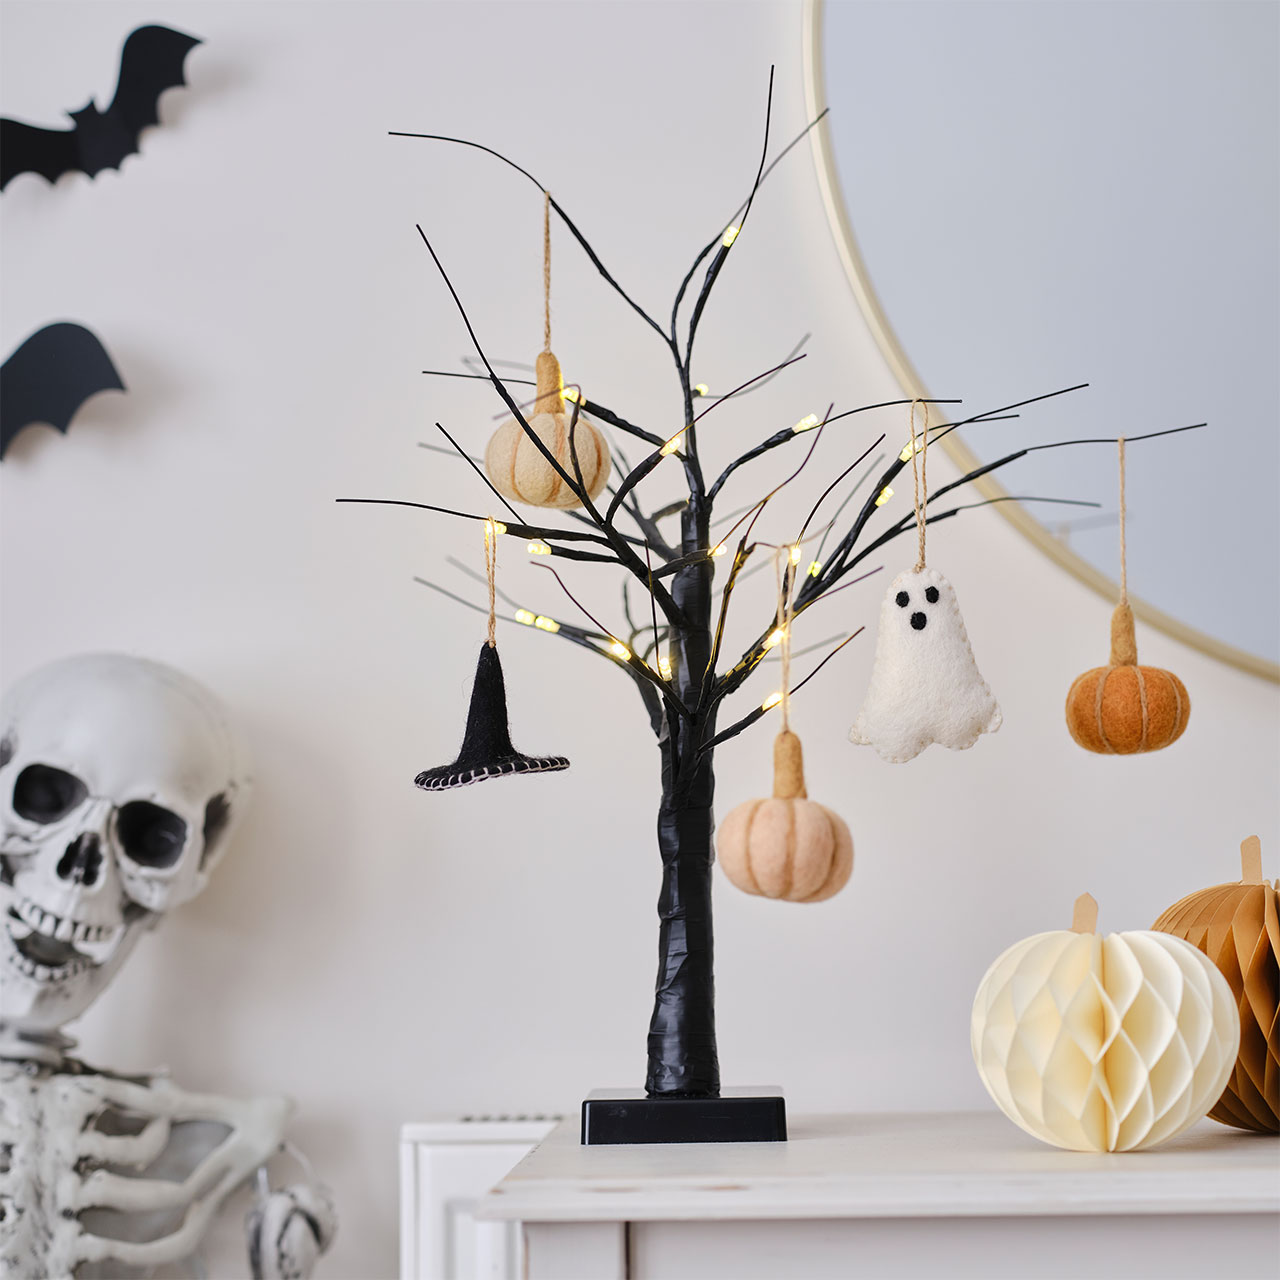 Tree Decorations - Felt Pumpkins